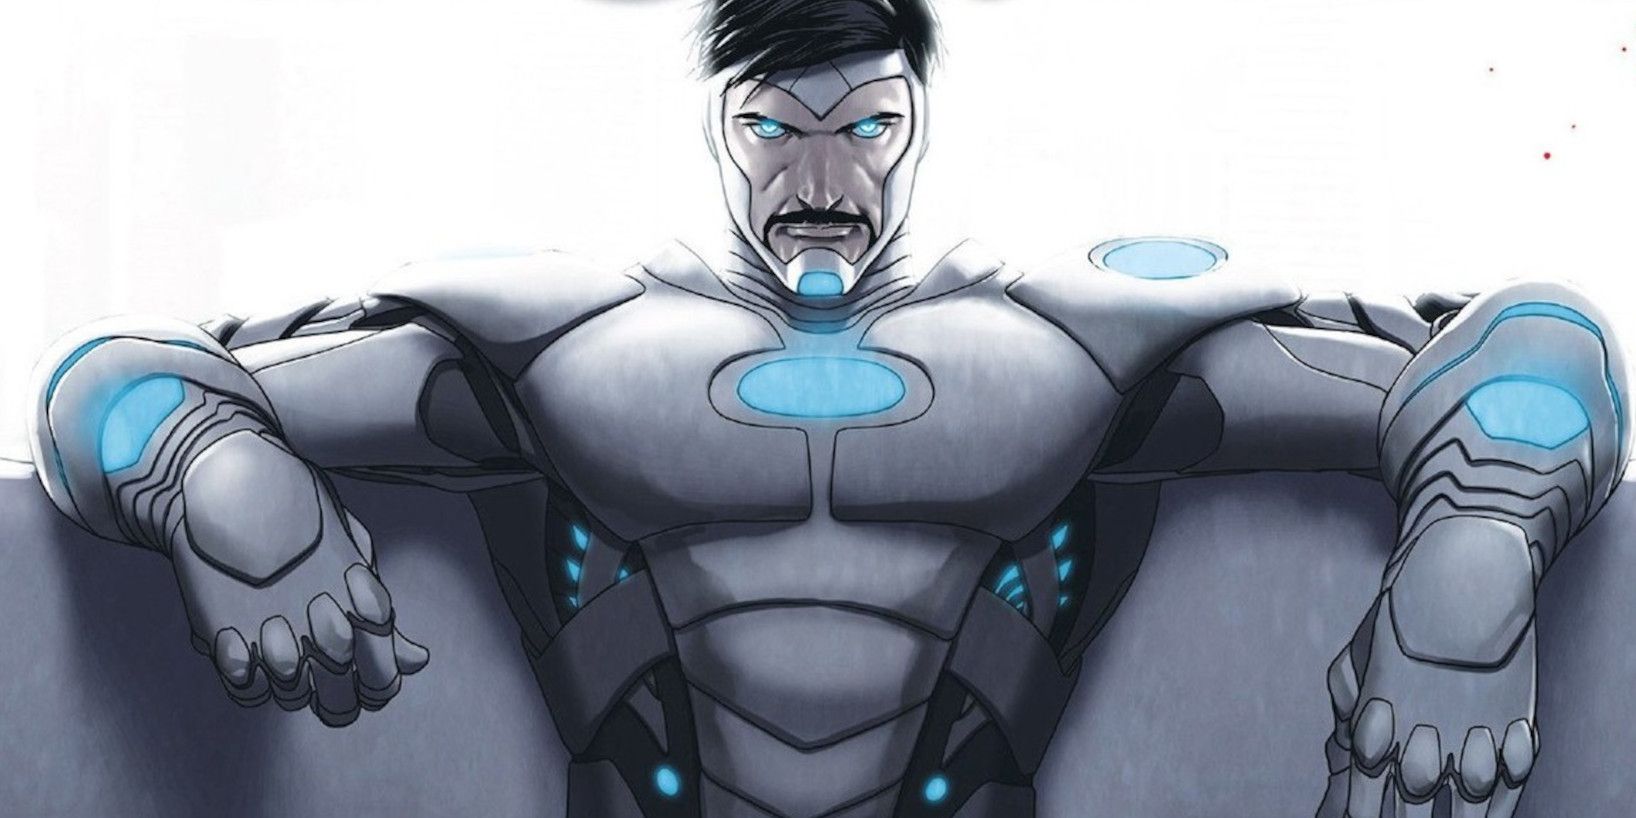 Tony Stark as Superior Iron Man